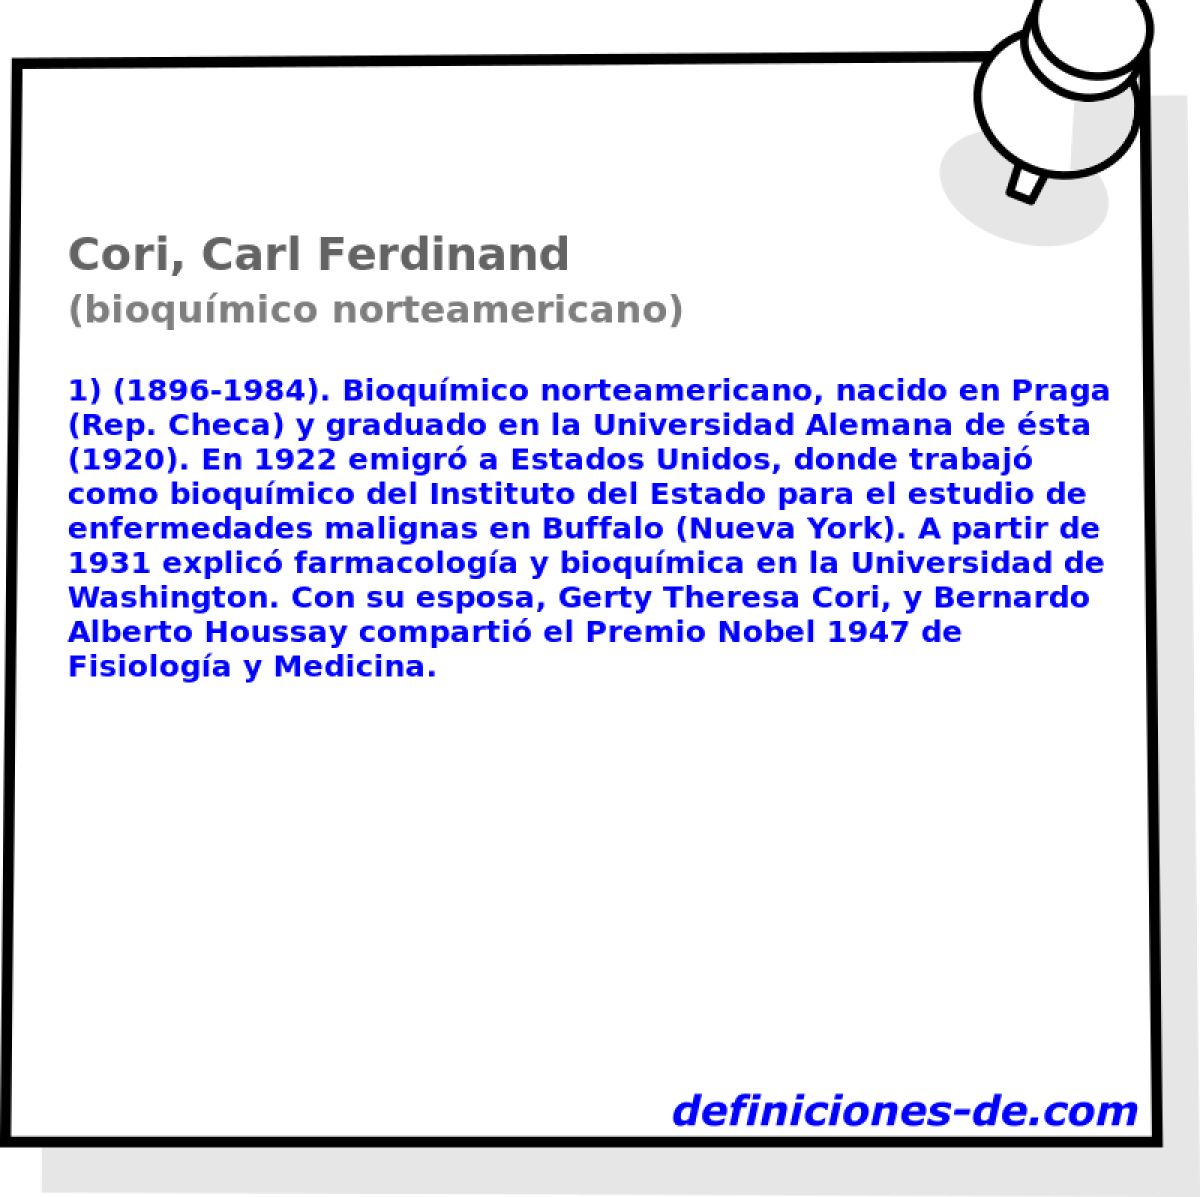 Cori, Carl Ferdinand (bioqumico norteamericano)